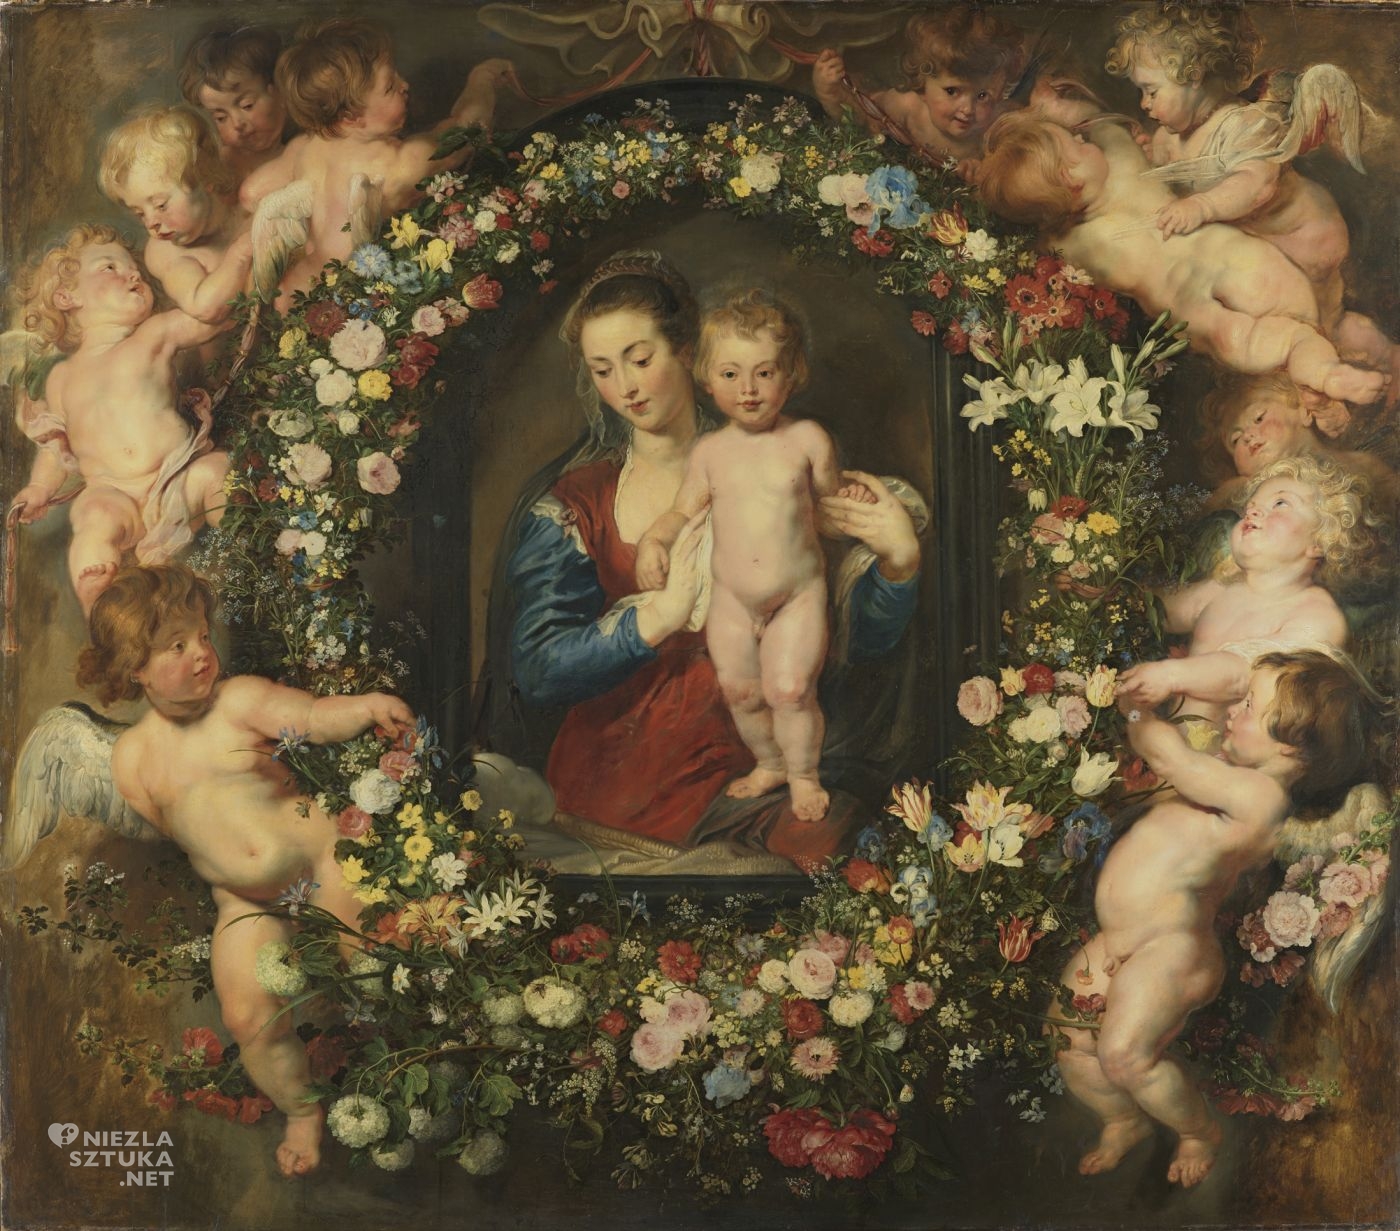 Peter Paul Rubens, Jan Brueghel, Madonna otoczona wieńcem z kwiatów, niezła sztuka